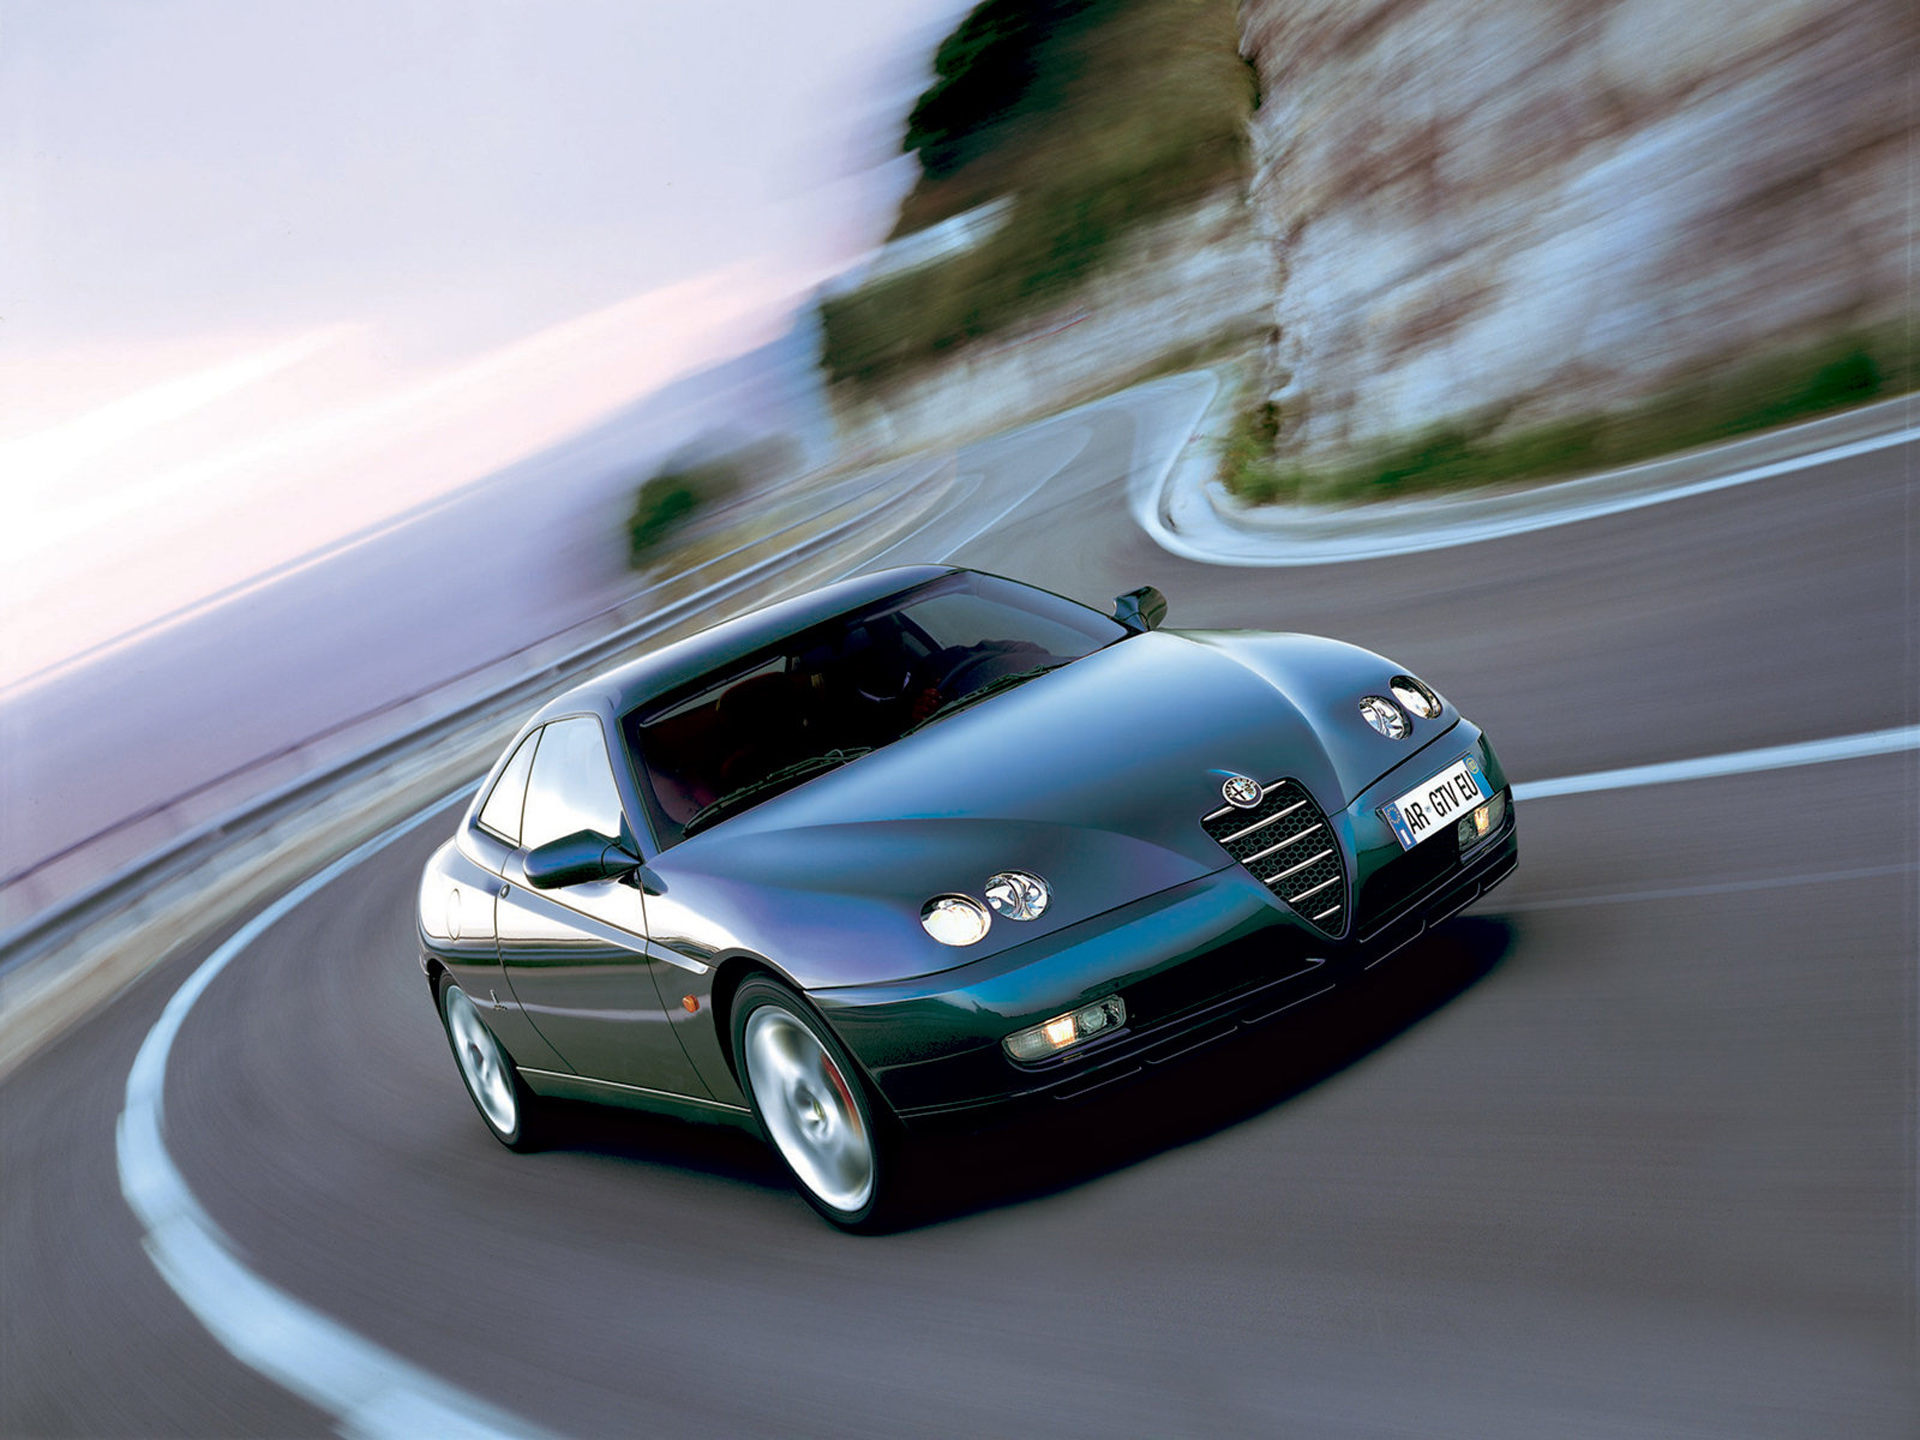 Descarga gratuita de fondo de pantalla para móvil de Alfa Romeo Gtv, Alfa Romeo, Vehículos.